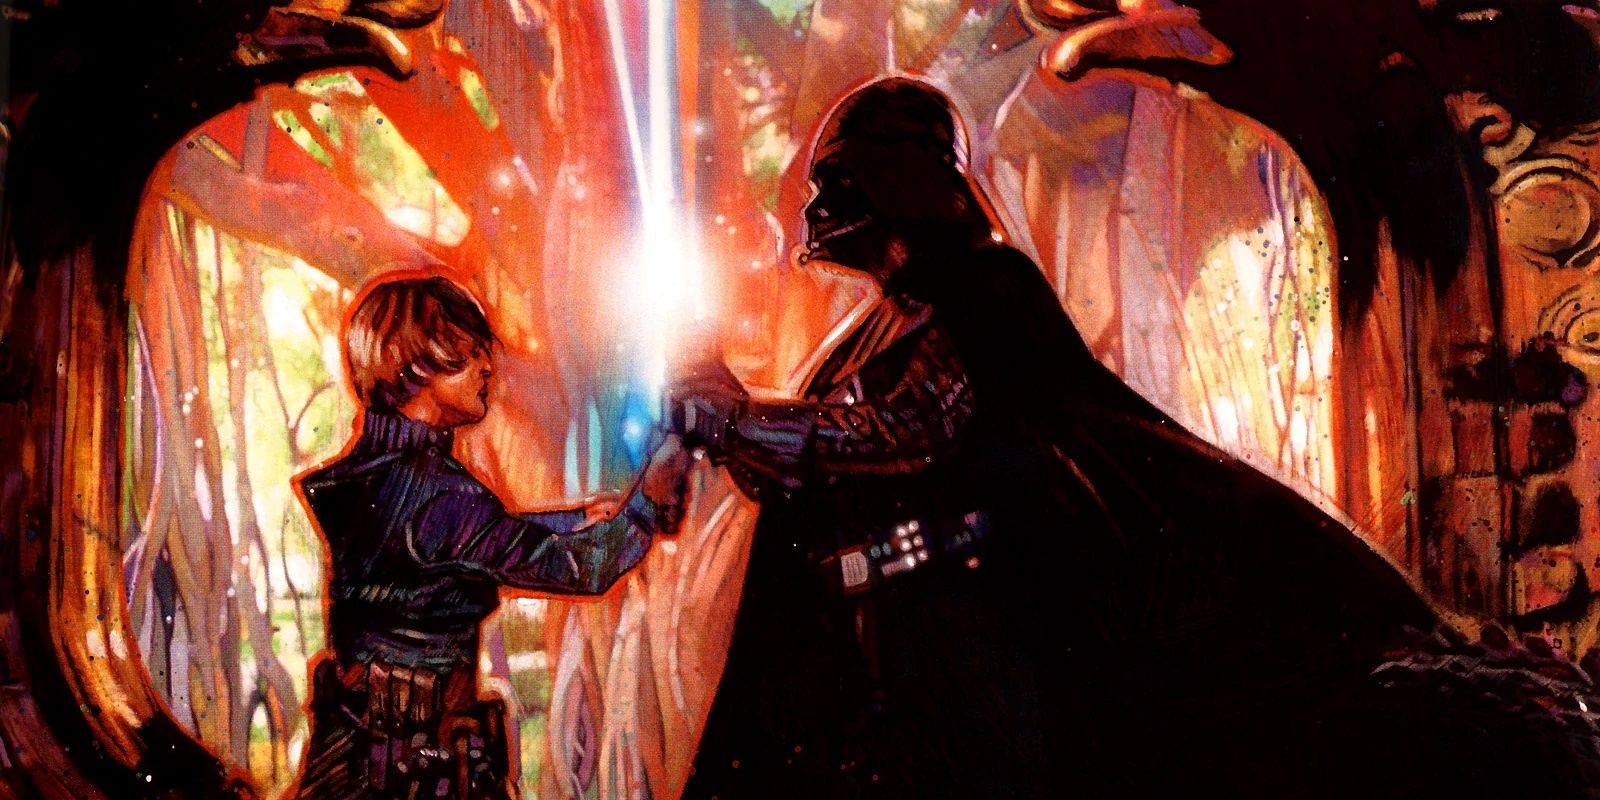 Luke Dueling Darth Vader